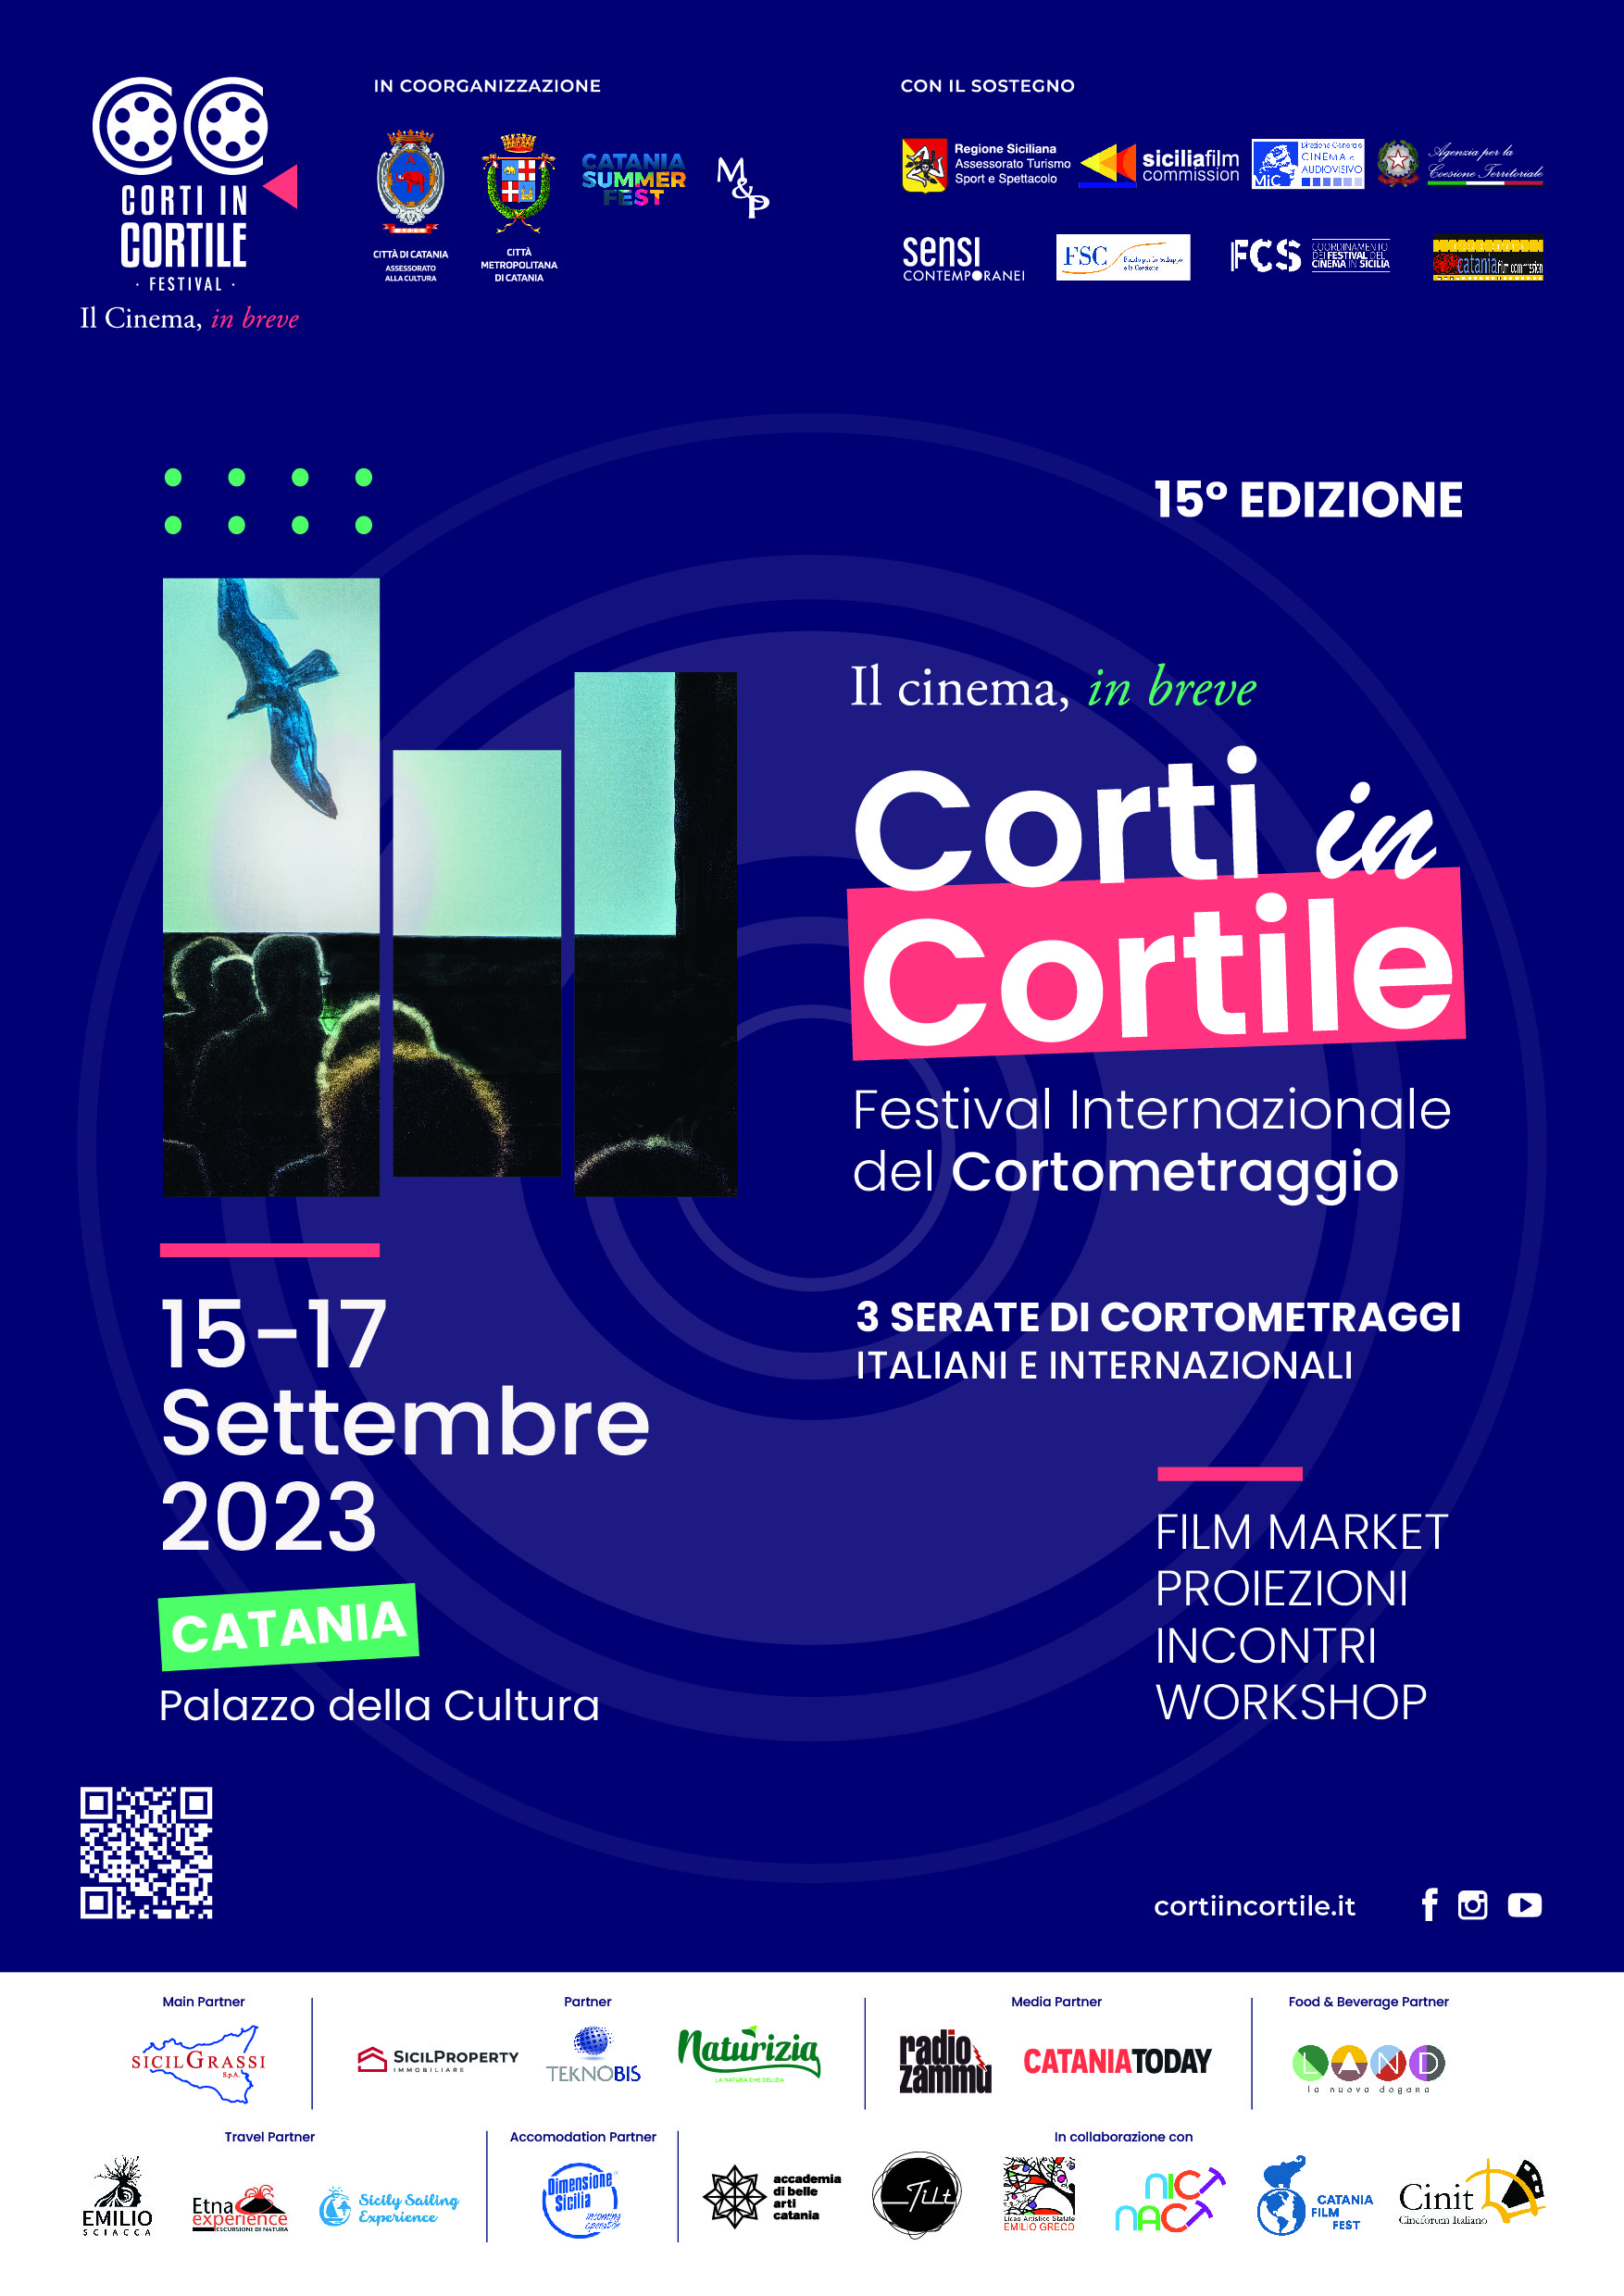 A Catania dal 15 settembre Corti in Cortile, il Cinema in breve